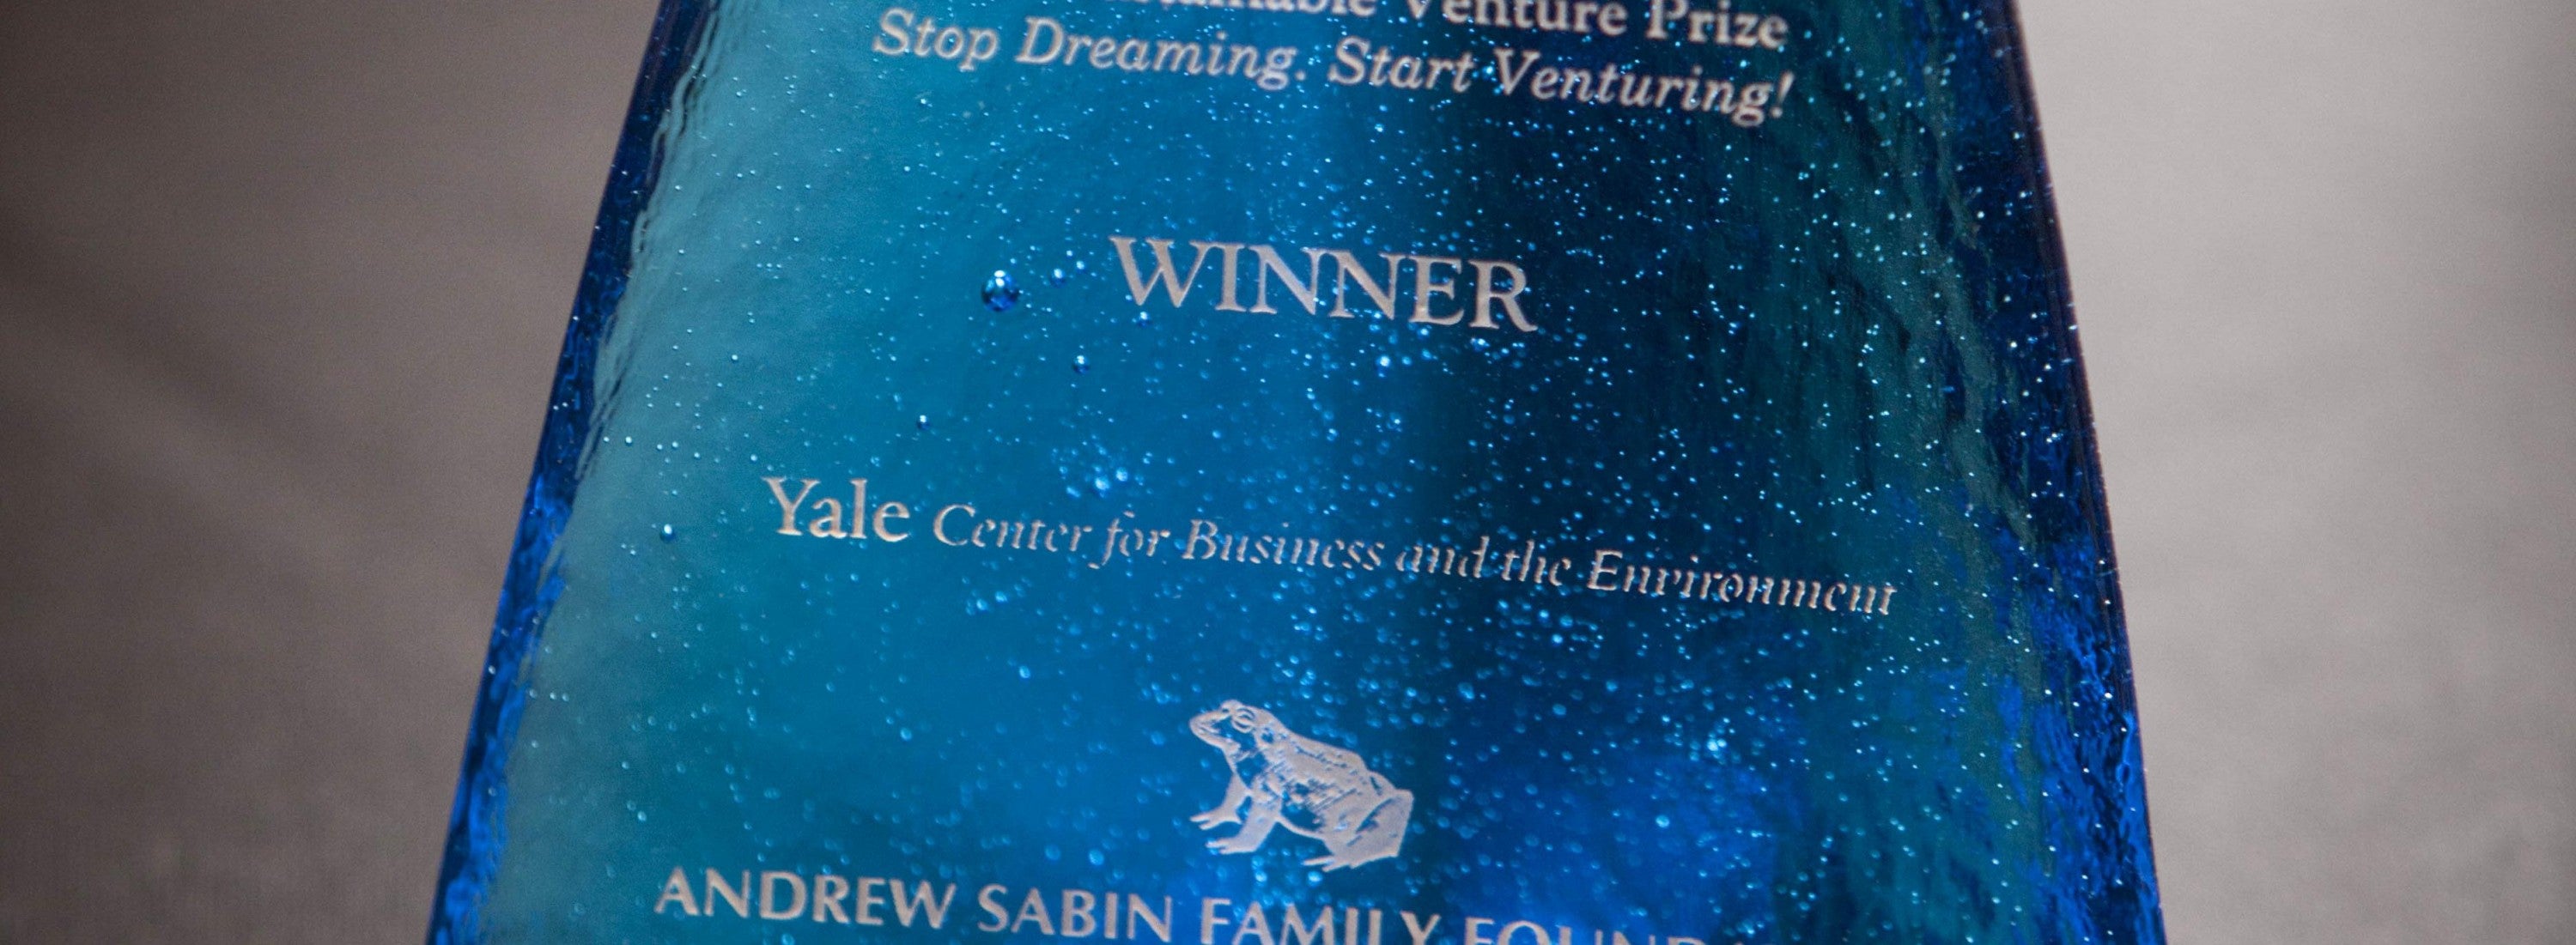 Sabin award